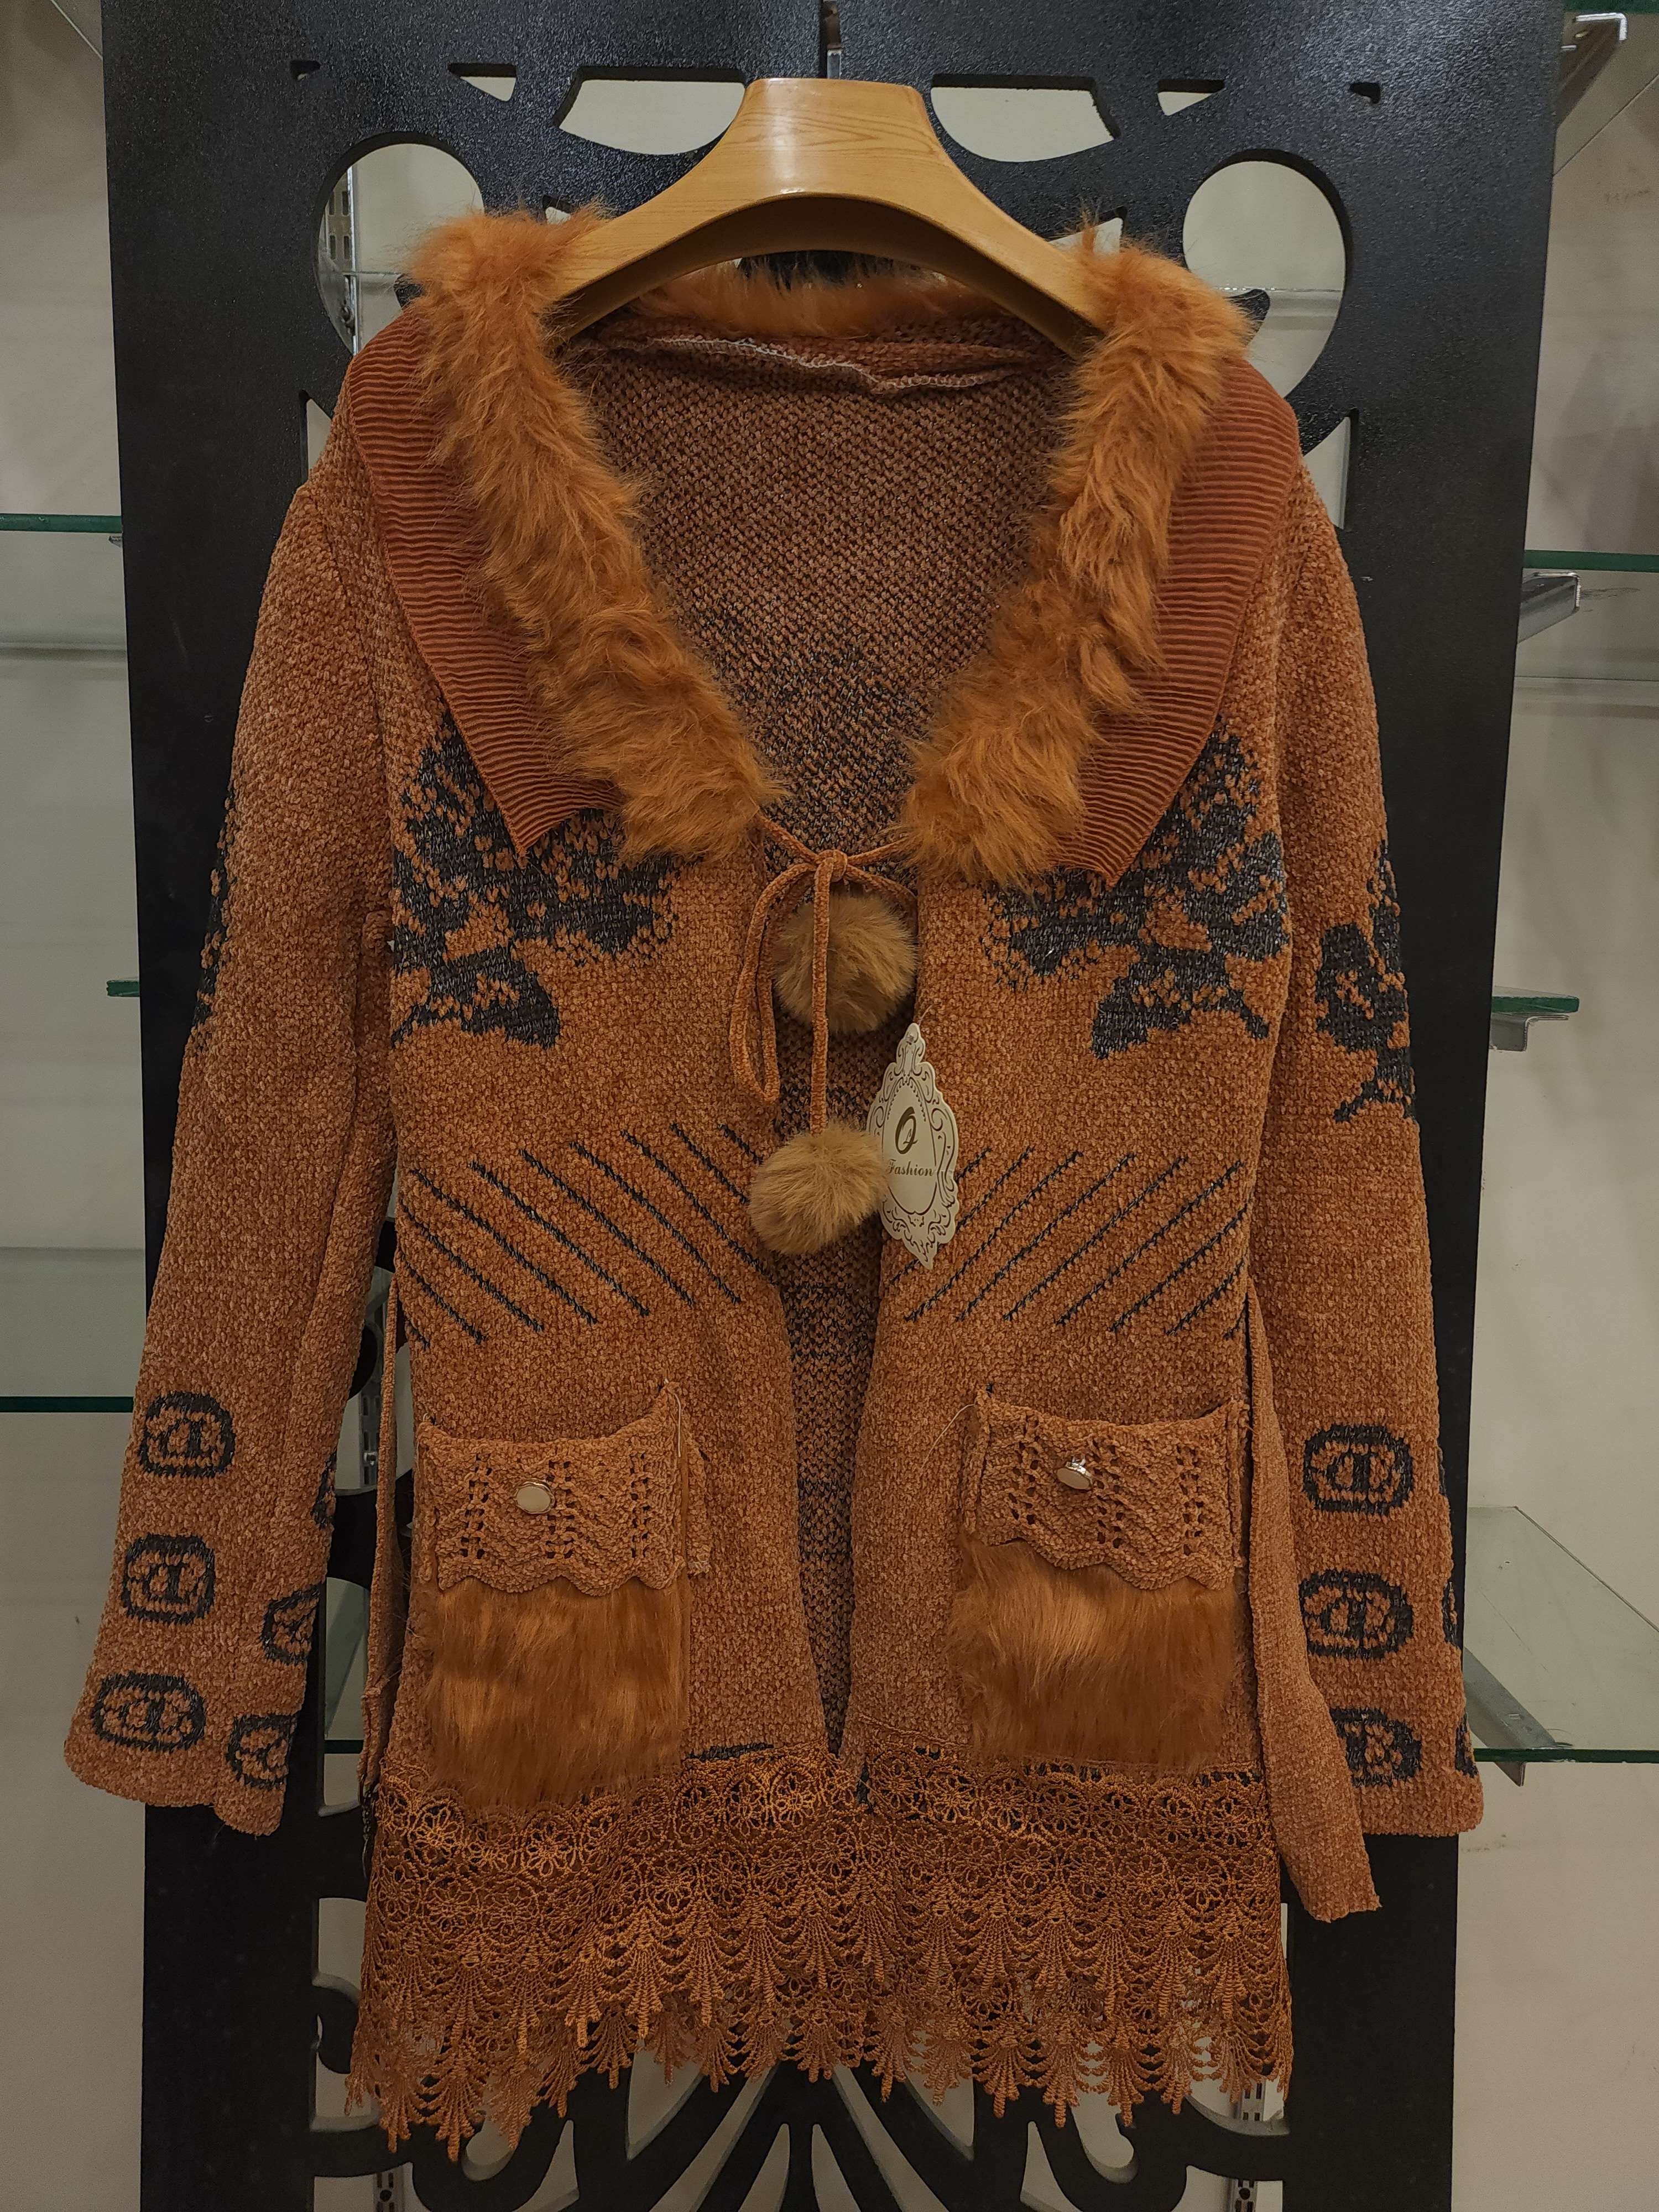 Rust Women Sweater - Maha fashions -  women clothing